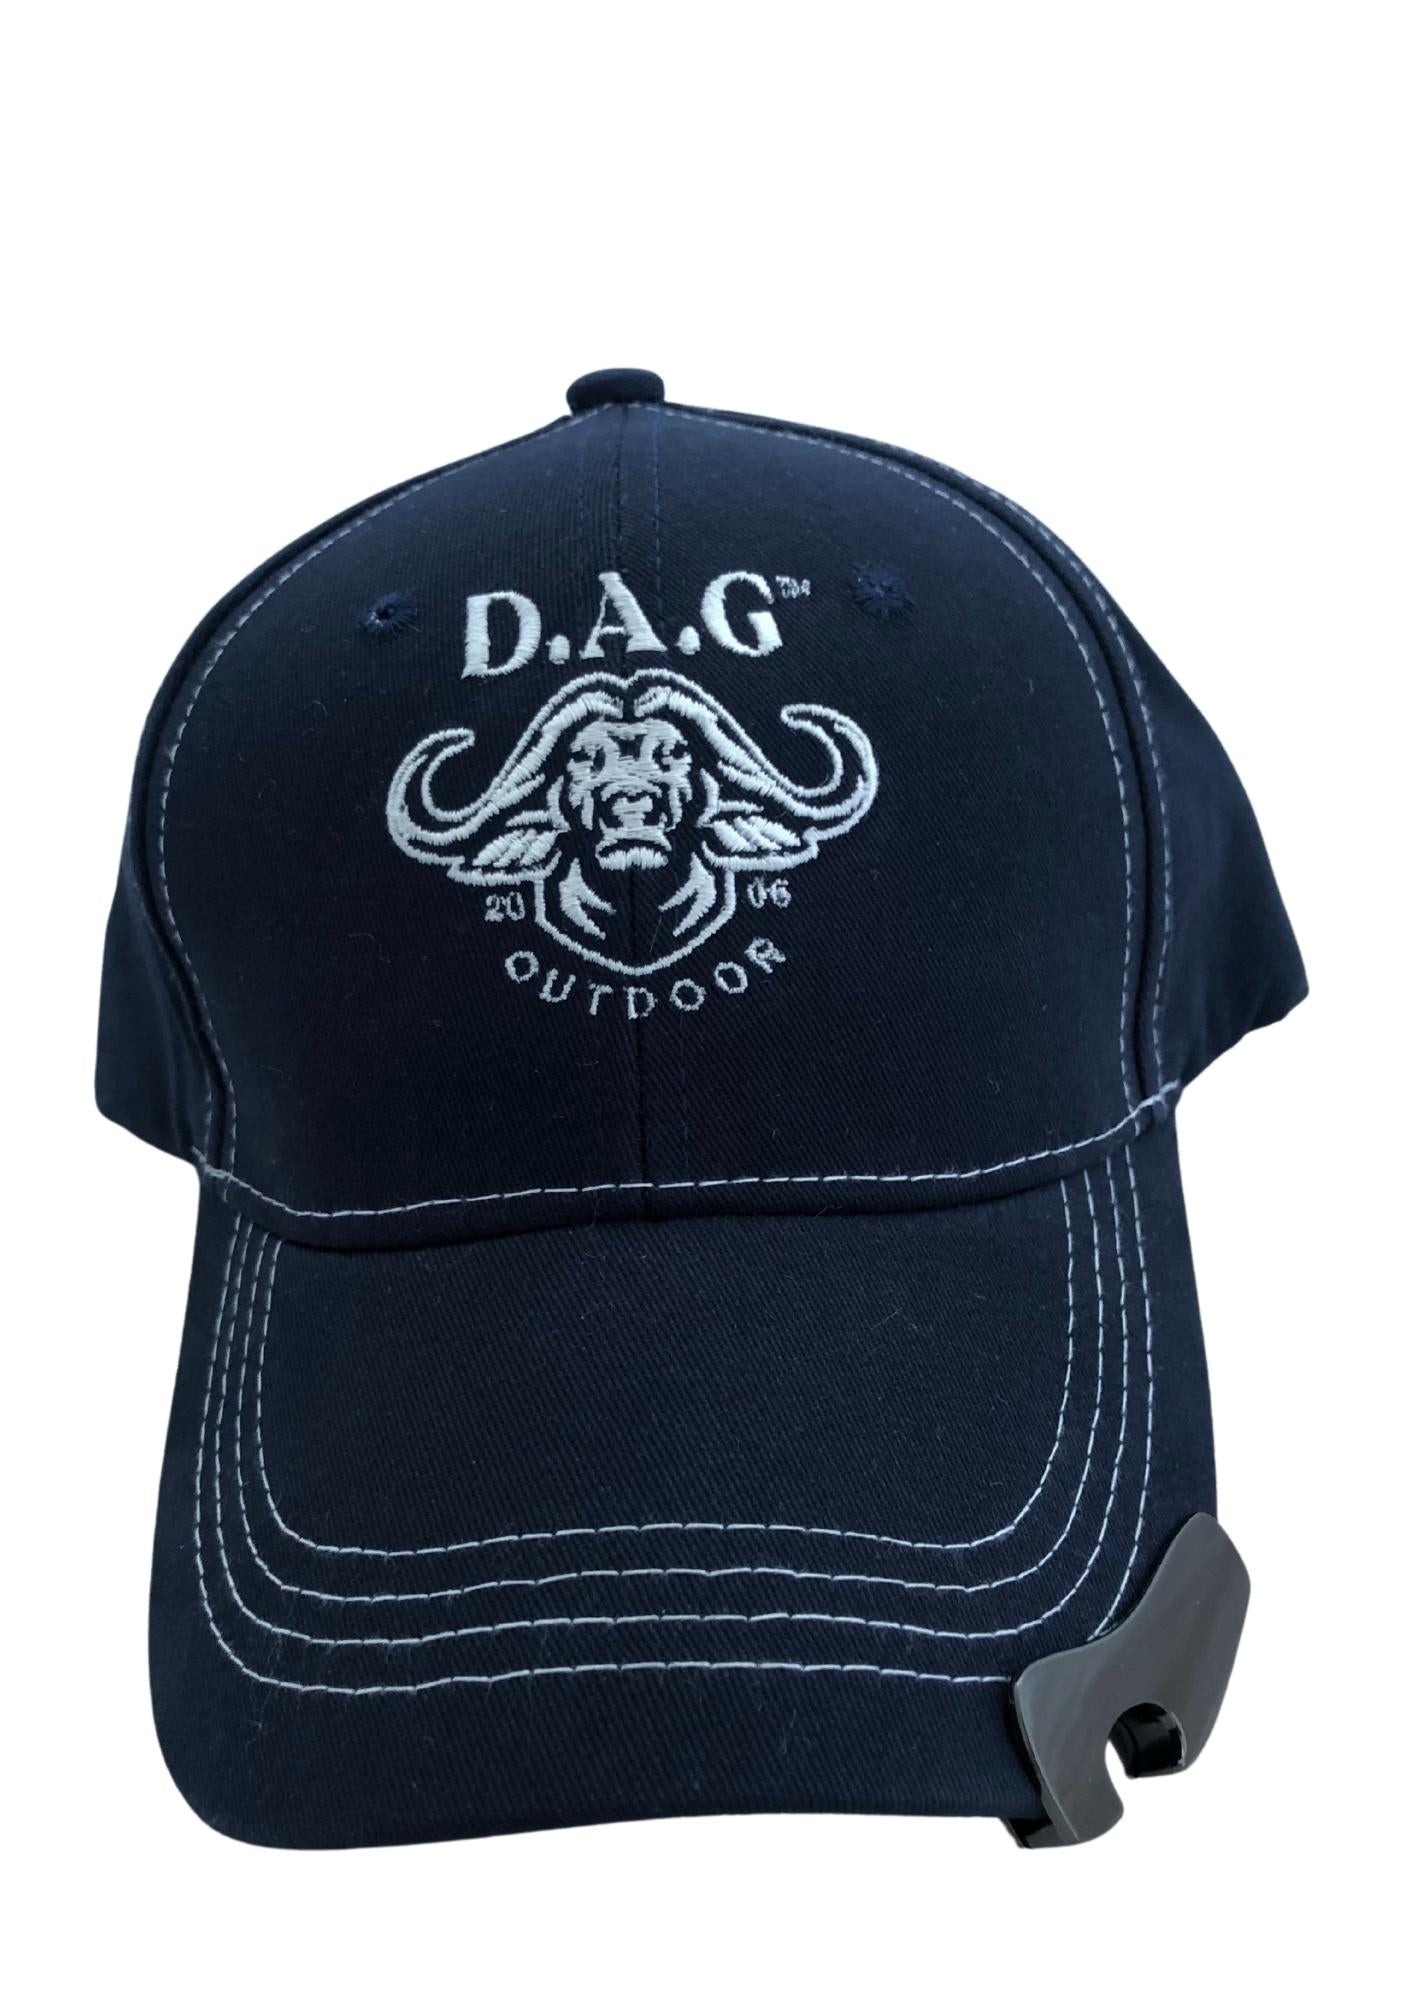 D.A.G | BOTTLE OPENER CAP